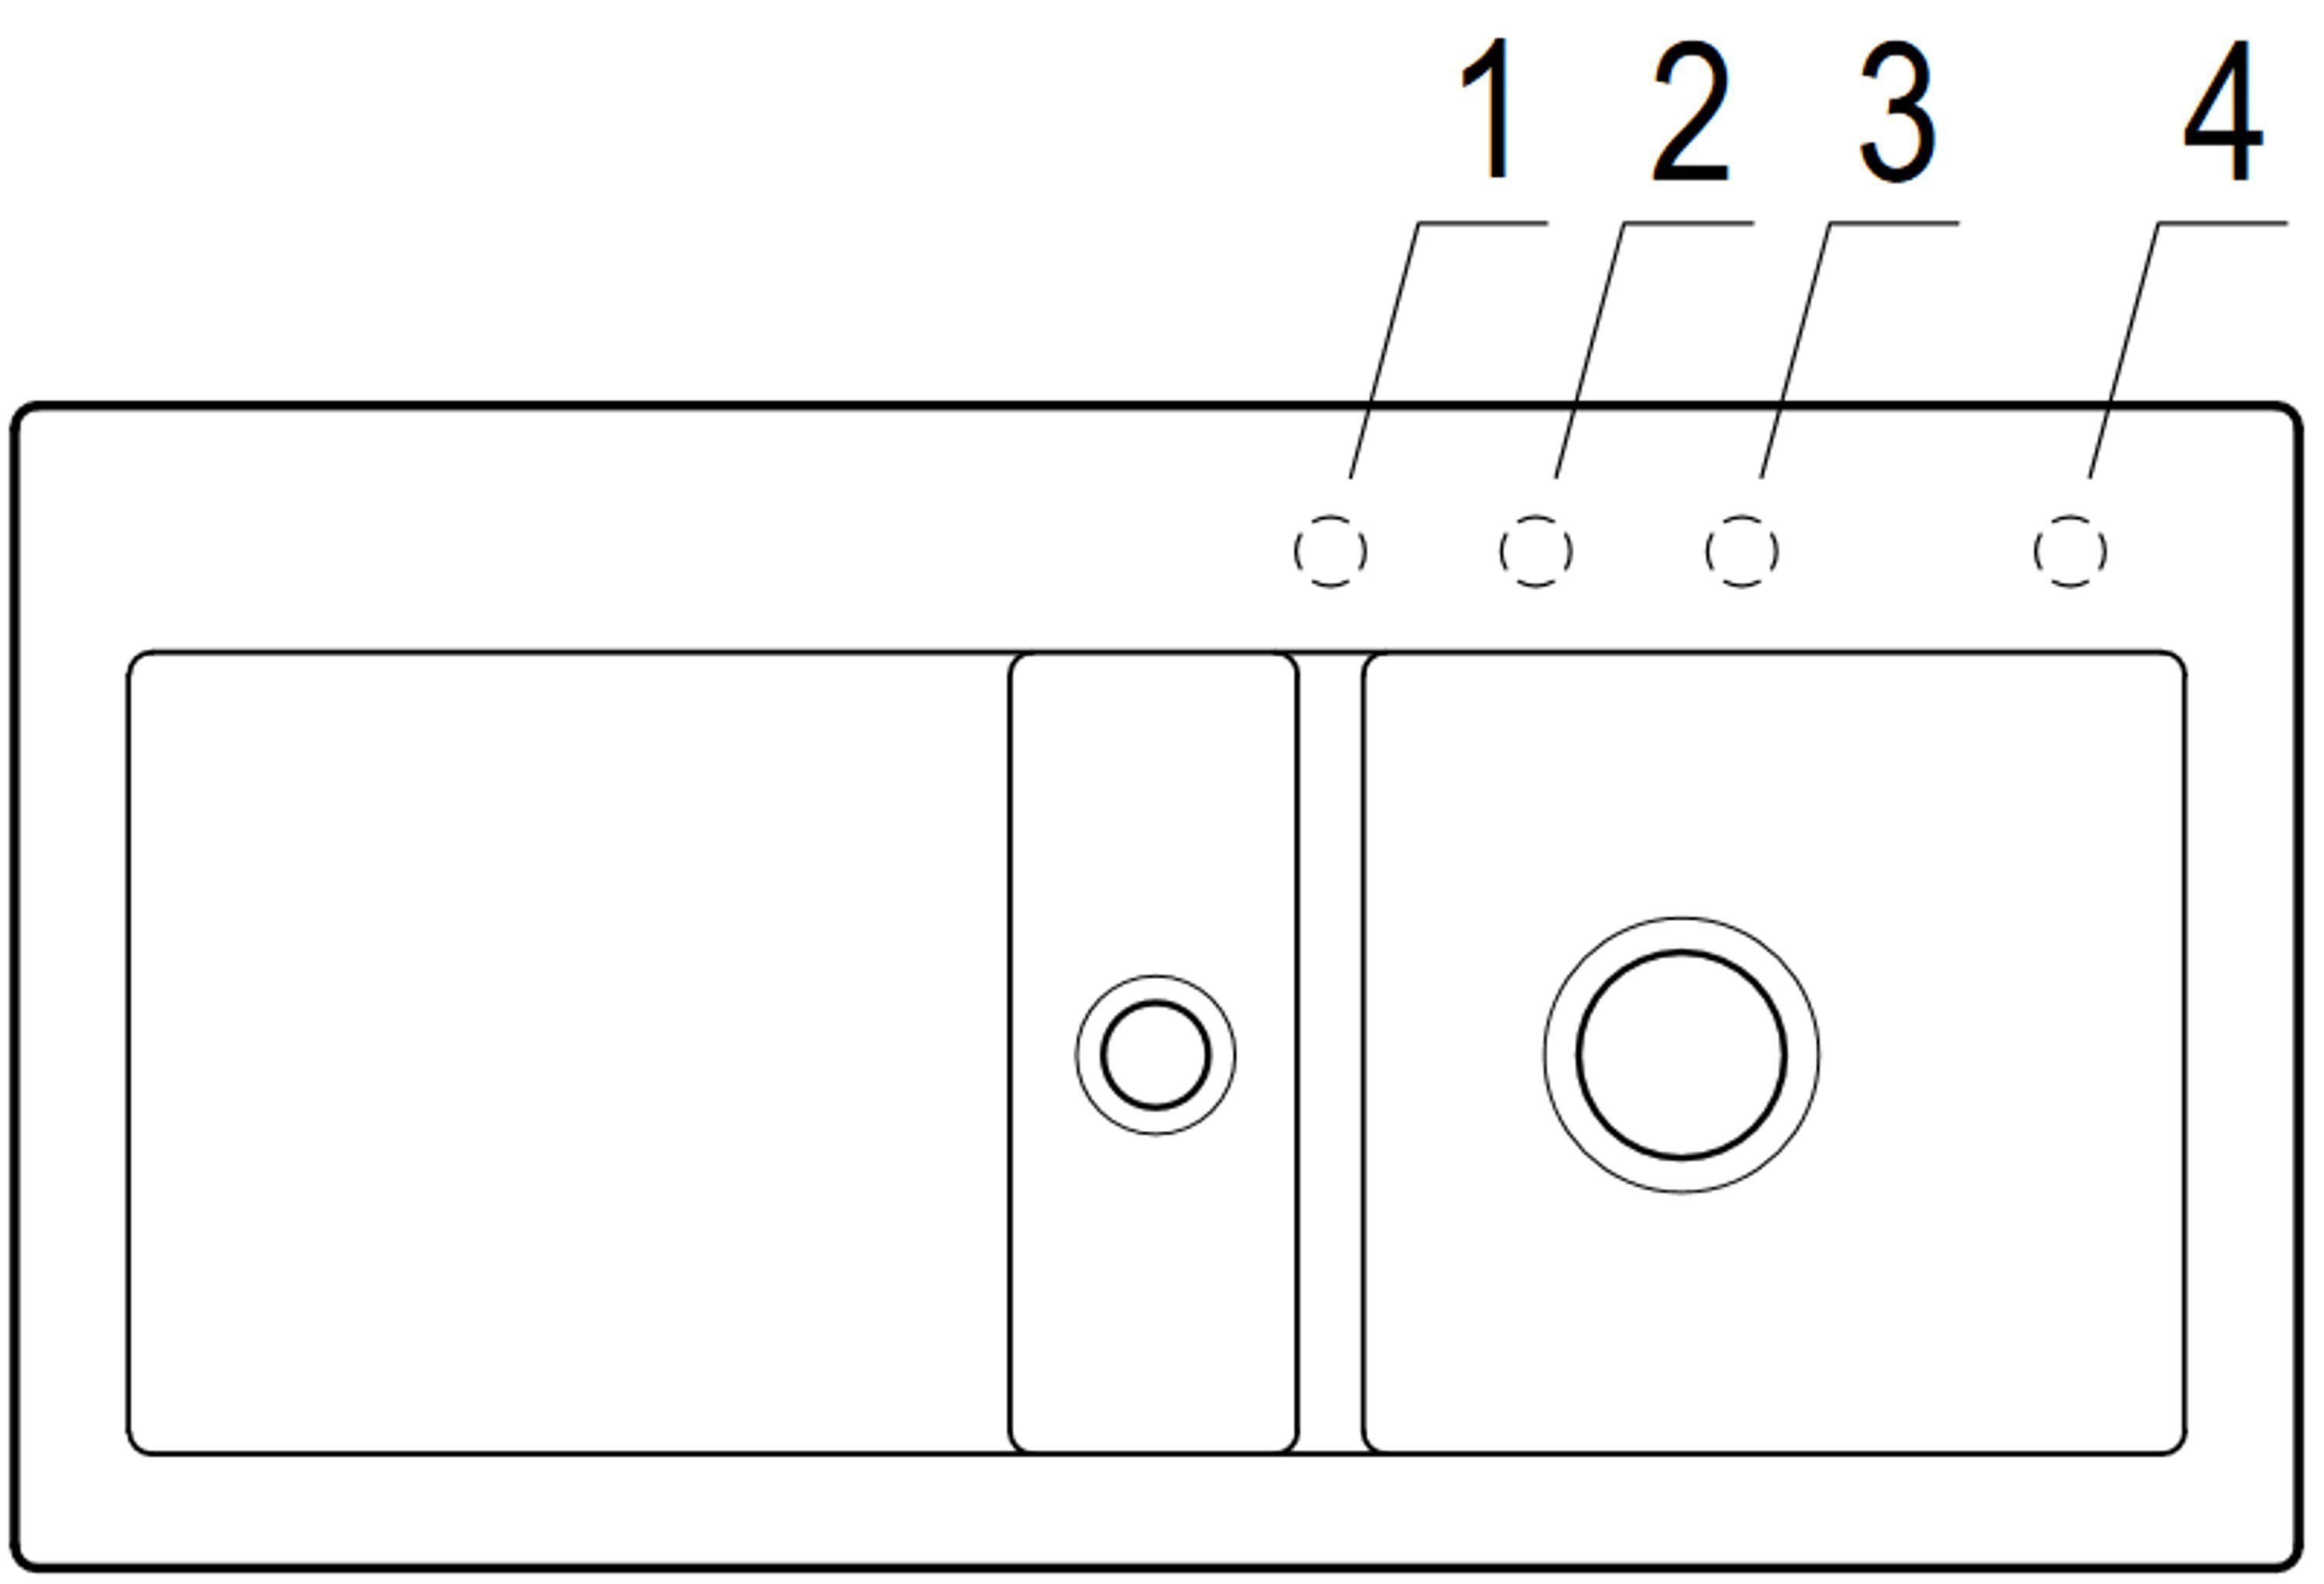 Villeroy & Boch rechts links 02 Rechteckig, 100/22 6712 cm, Geschmacksmuster Küchenspüle möglich und geschützt, Becken AM